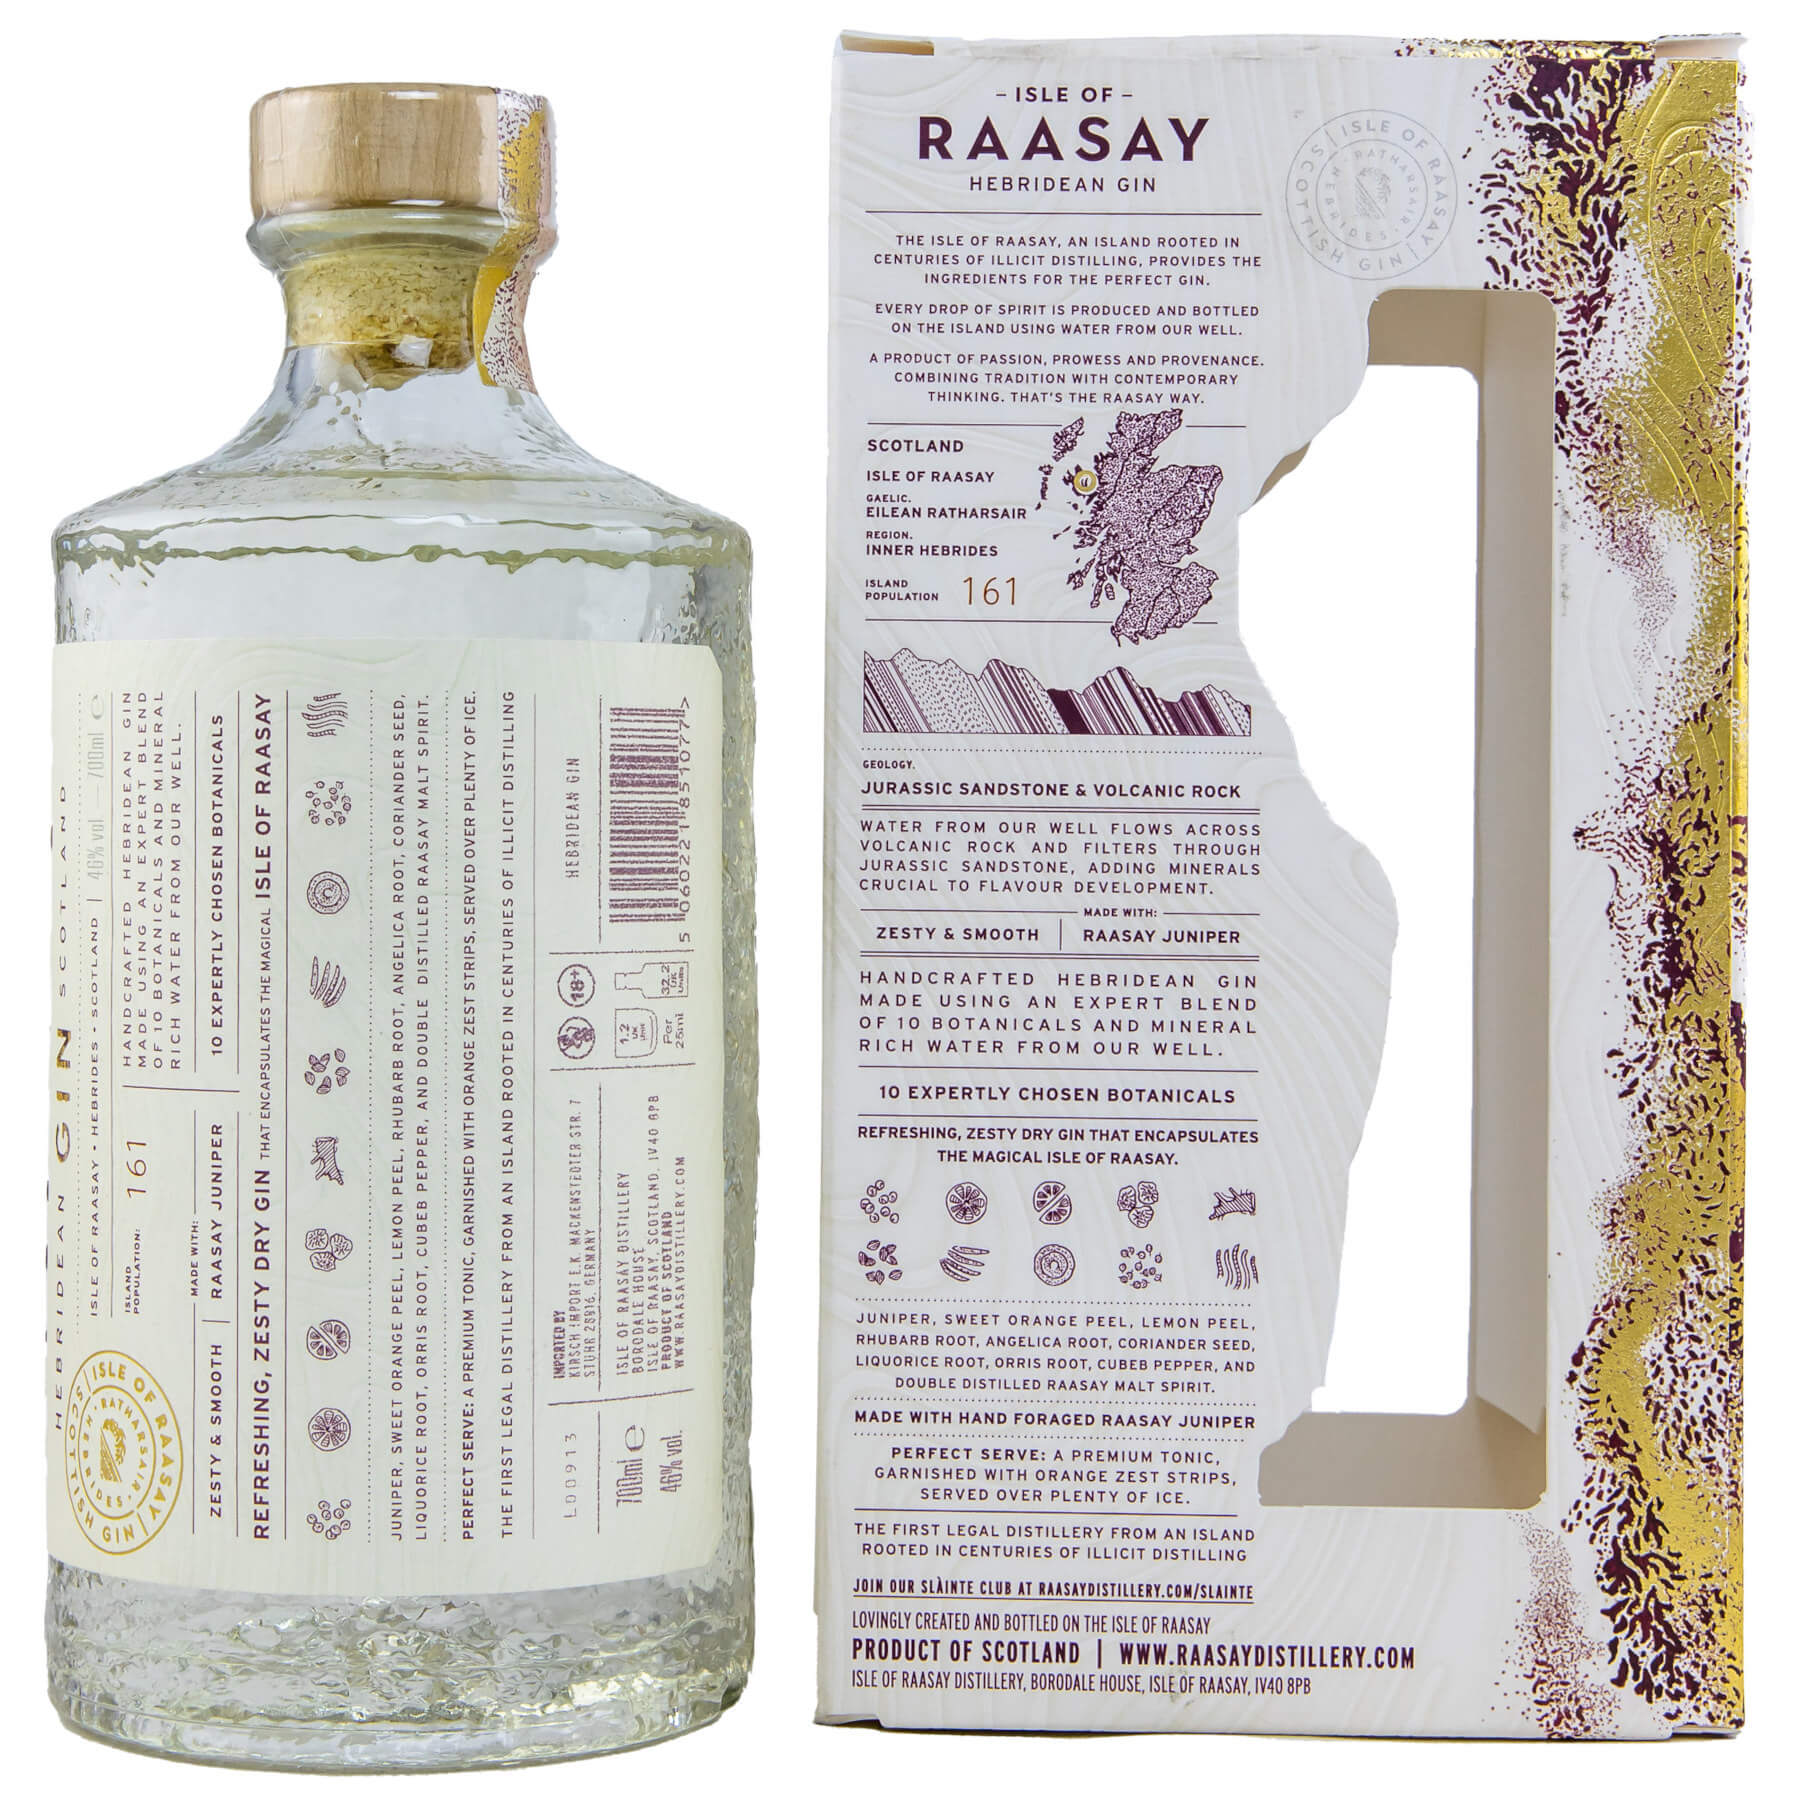 Flasche Raasay Gin mit Verpackung Rückseite